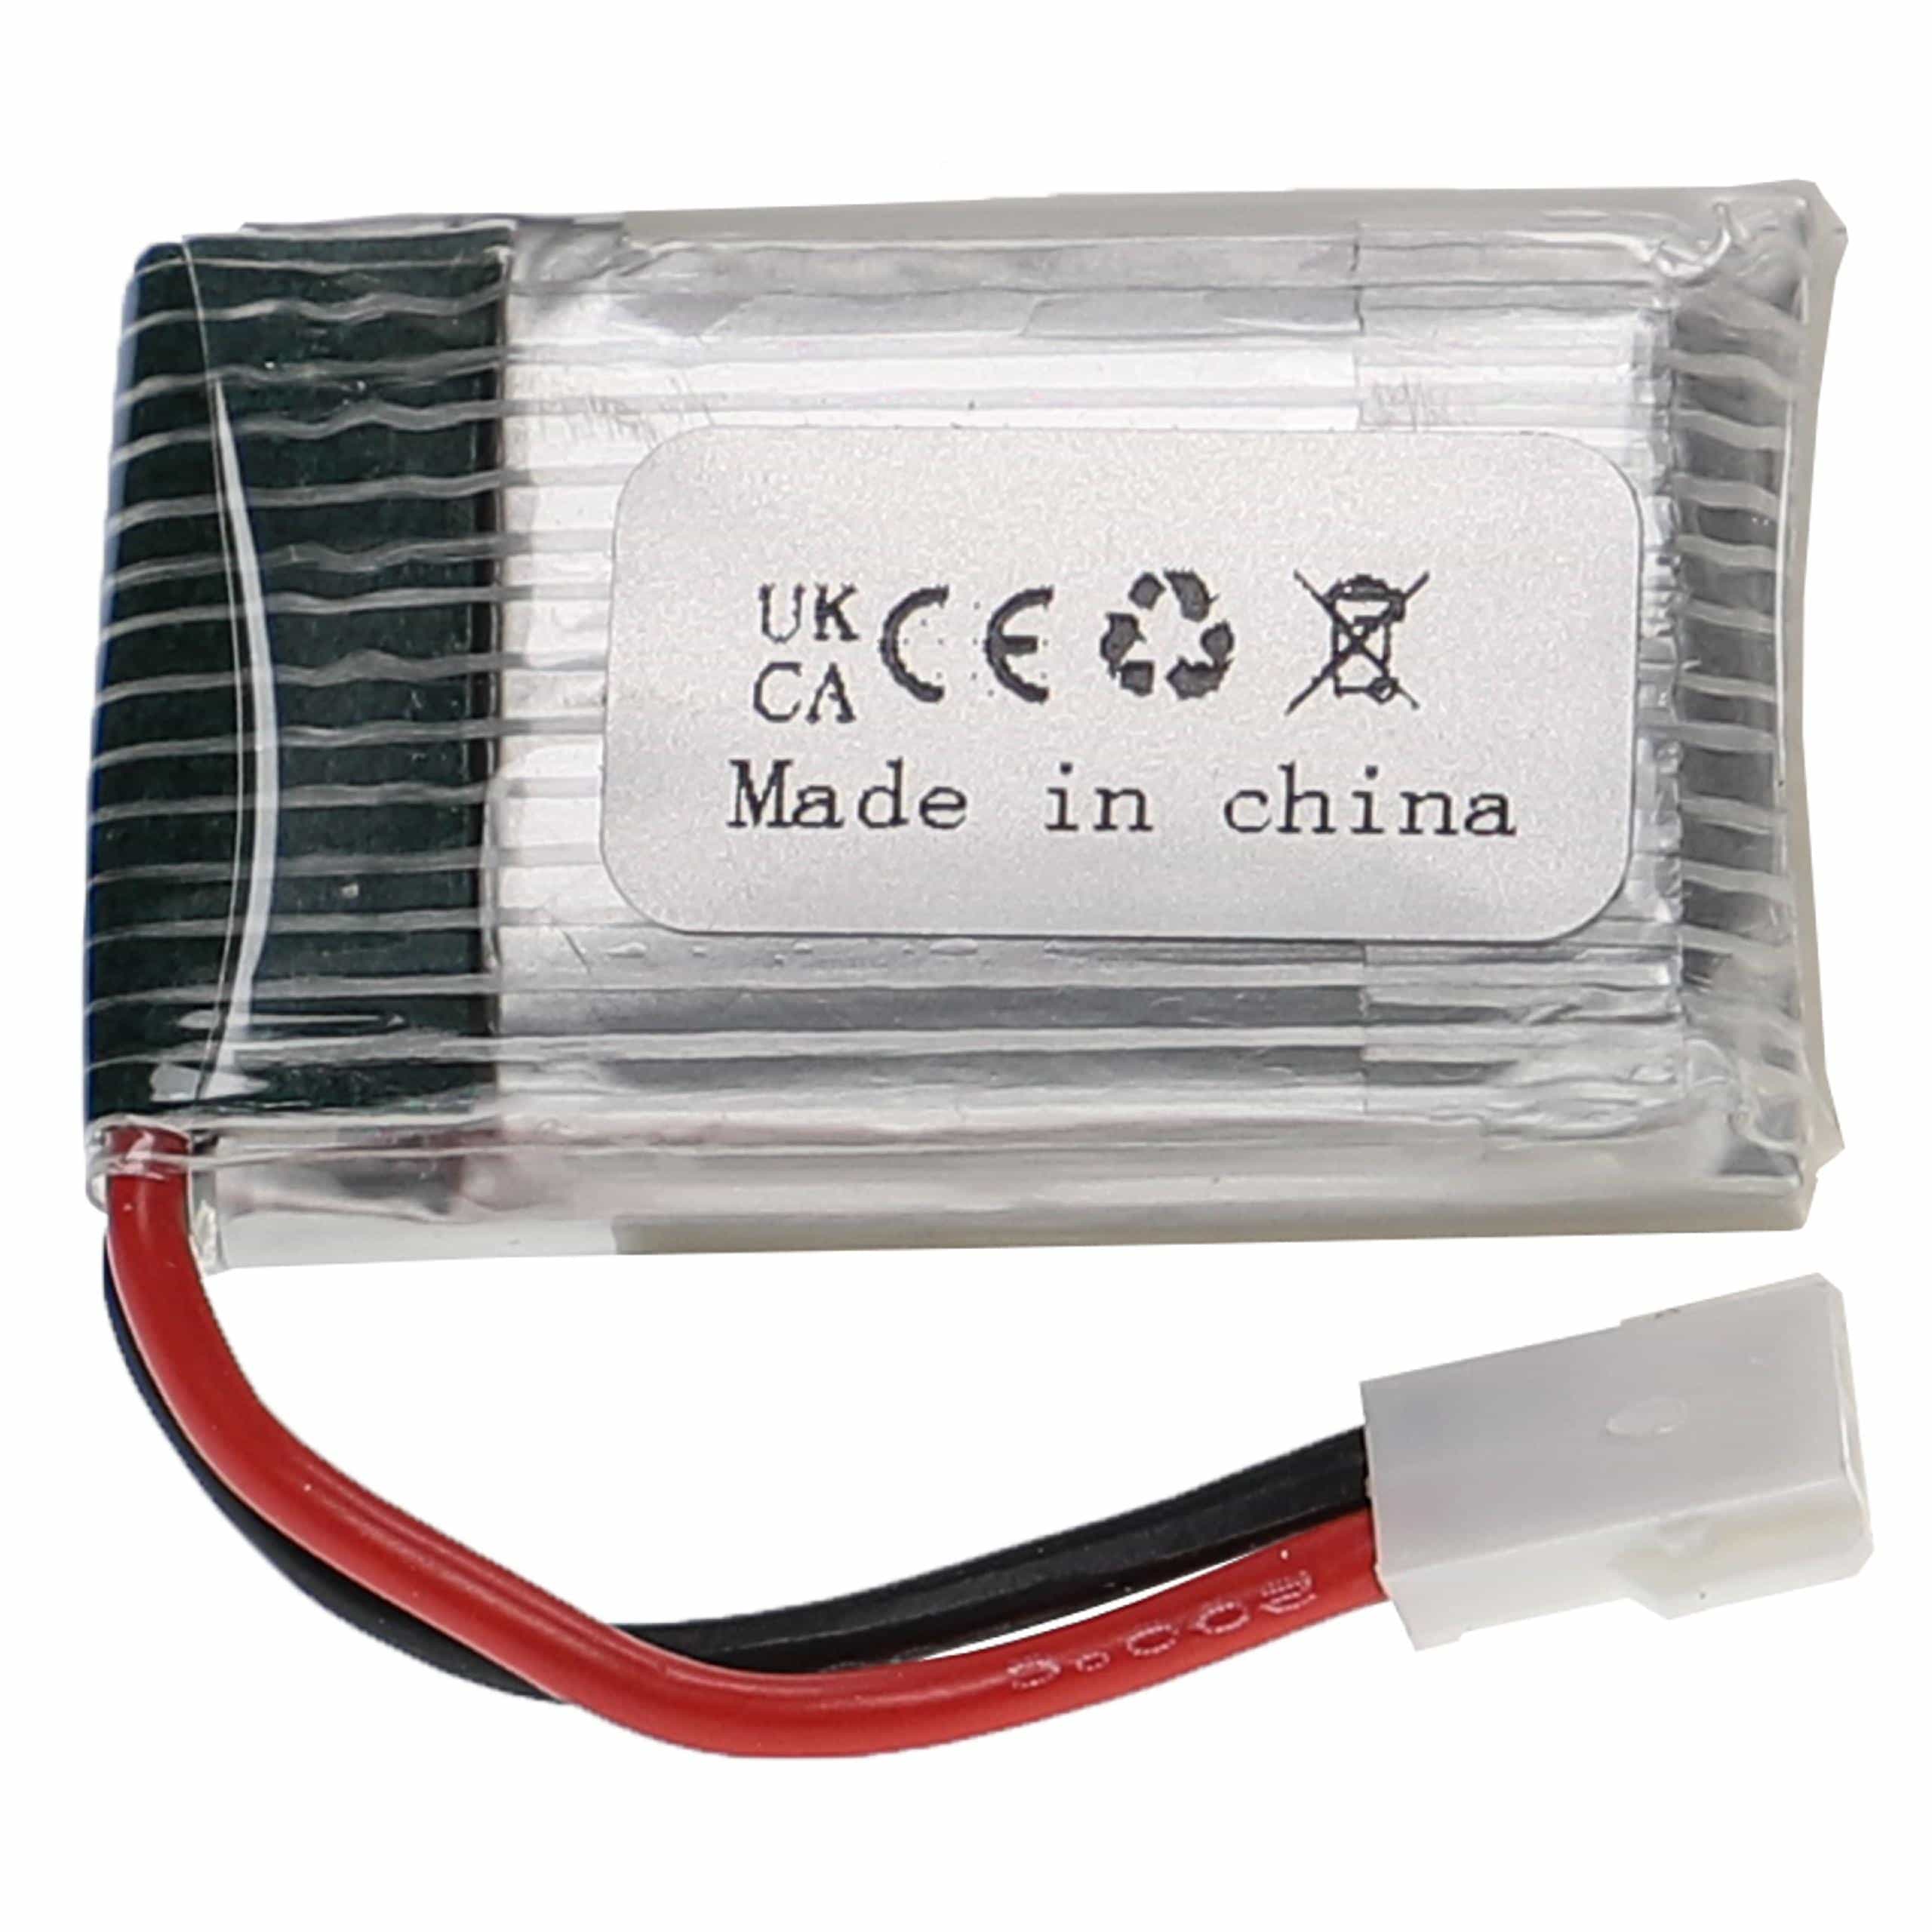 Batterie pour modèle radio-télécommandé - 300mAh 3,7V Li-polymère, XH 2.54 2P